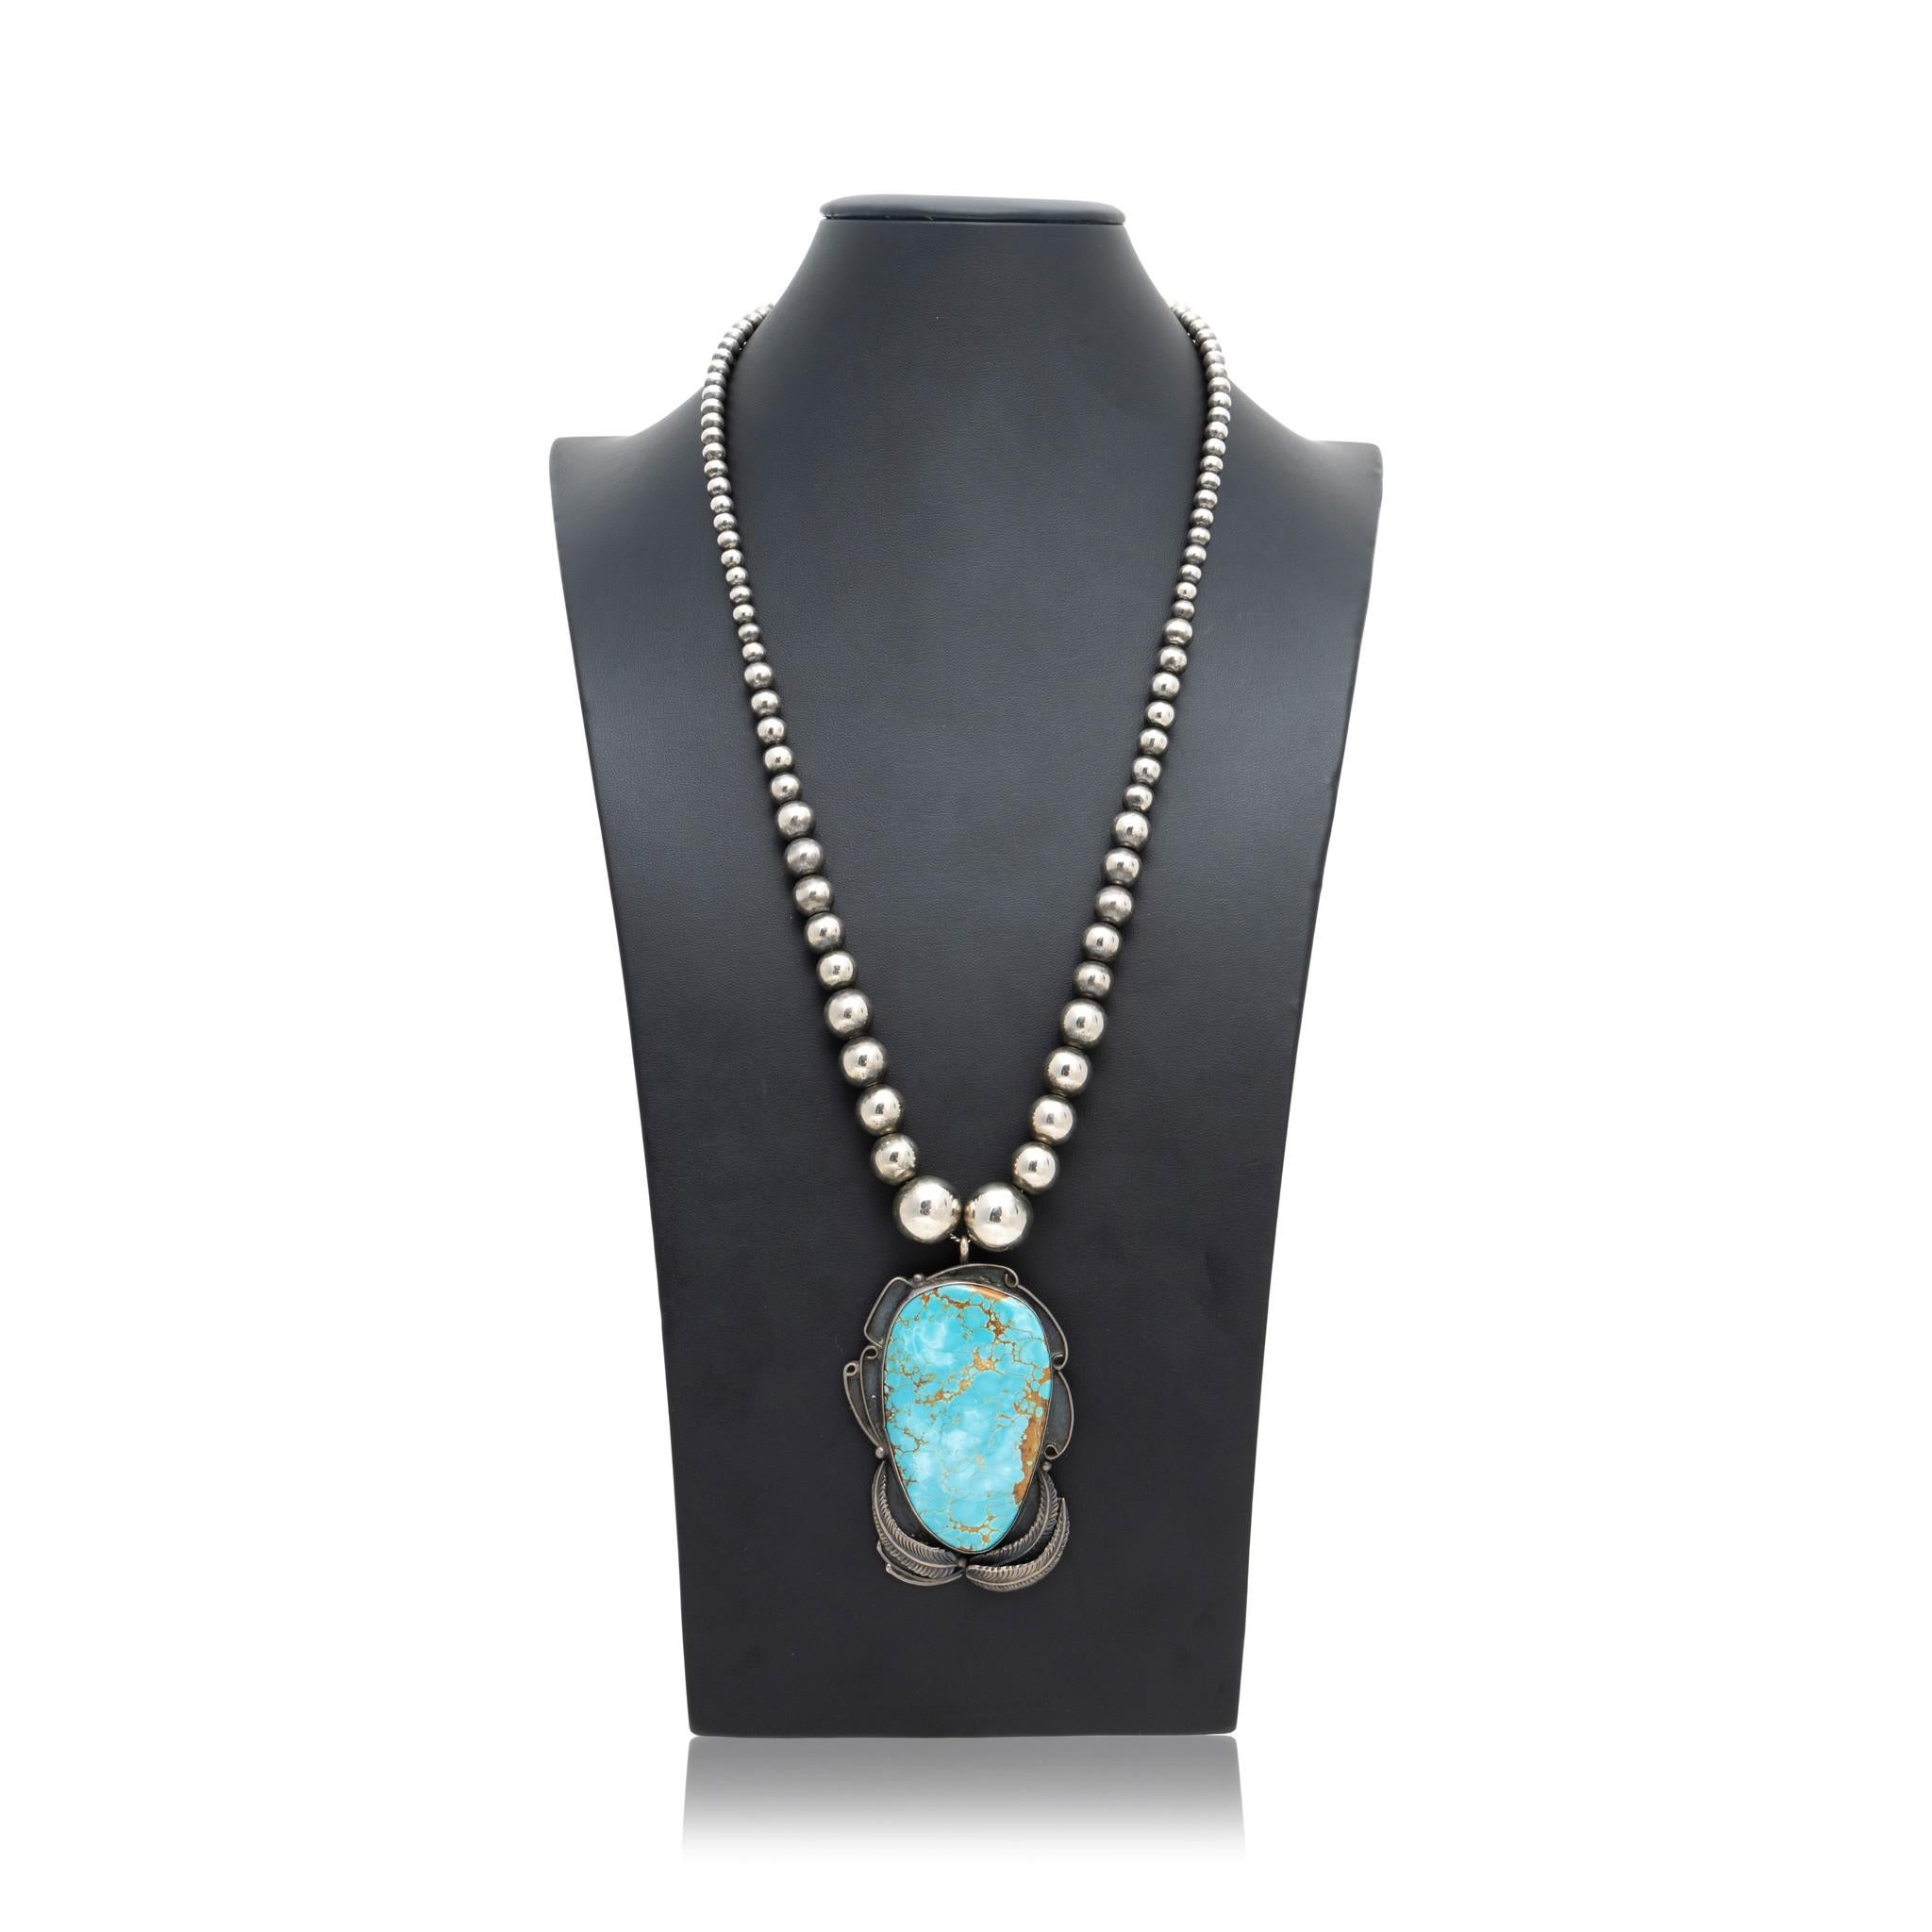 Navajo Indianer Halskette aus Sterlingsilber und Blue Diamond Türkis. Abgestufte Navajo-Perlenkette aus Sterlingsilber mit einer großen Türkisplatte in einer Sterling-Schattenbox mit Blattdesign. Viel Patina, die das Alter zeigt. Großartiger,